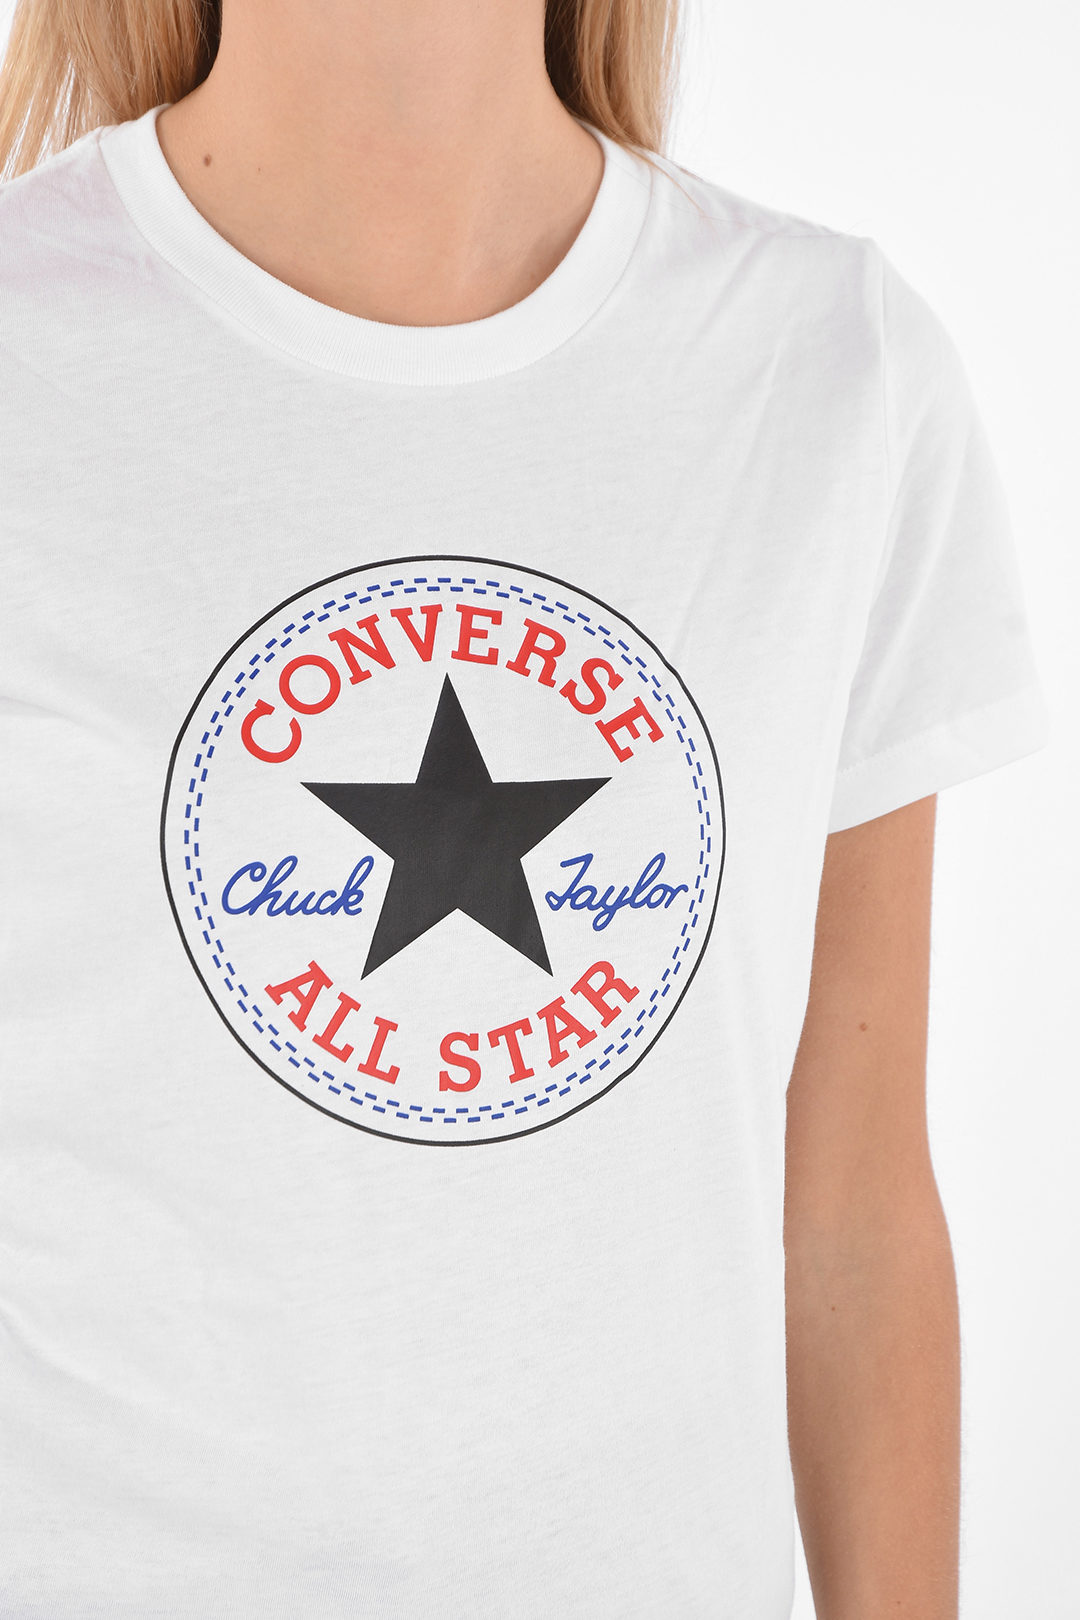 Manifesteren kraai Cyberruimte Converse ALL STAR Printed T-shirt women - Glamood Outlet